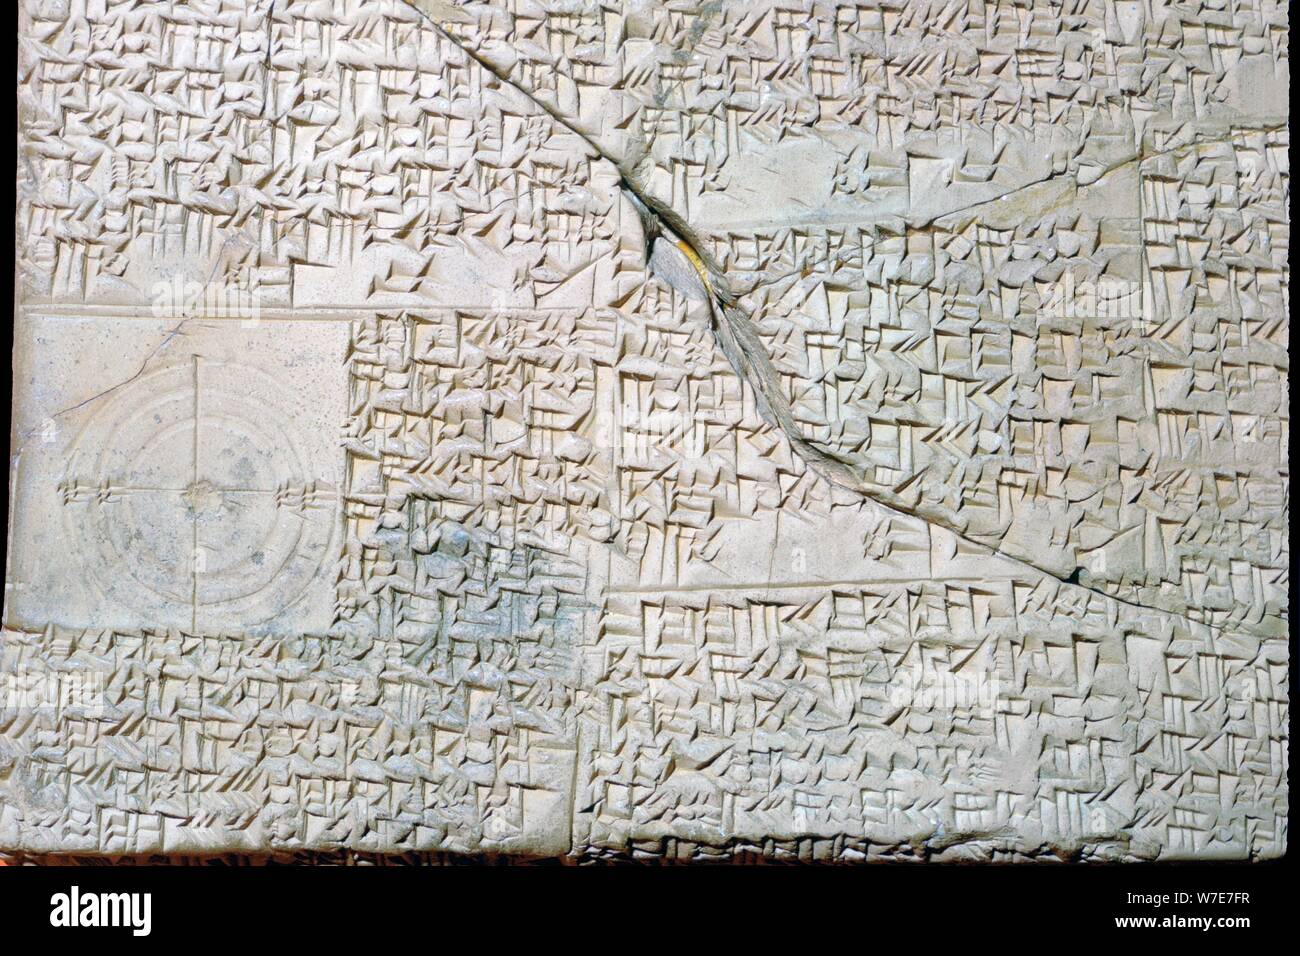 Babilonese di clay tablet con problemi geometrici. Artista: sconosciuto Foto Stock